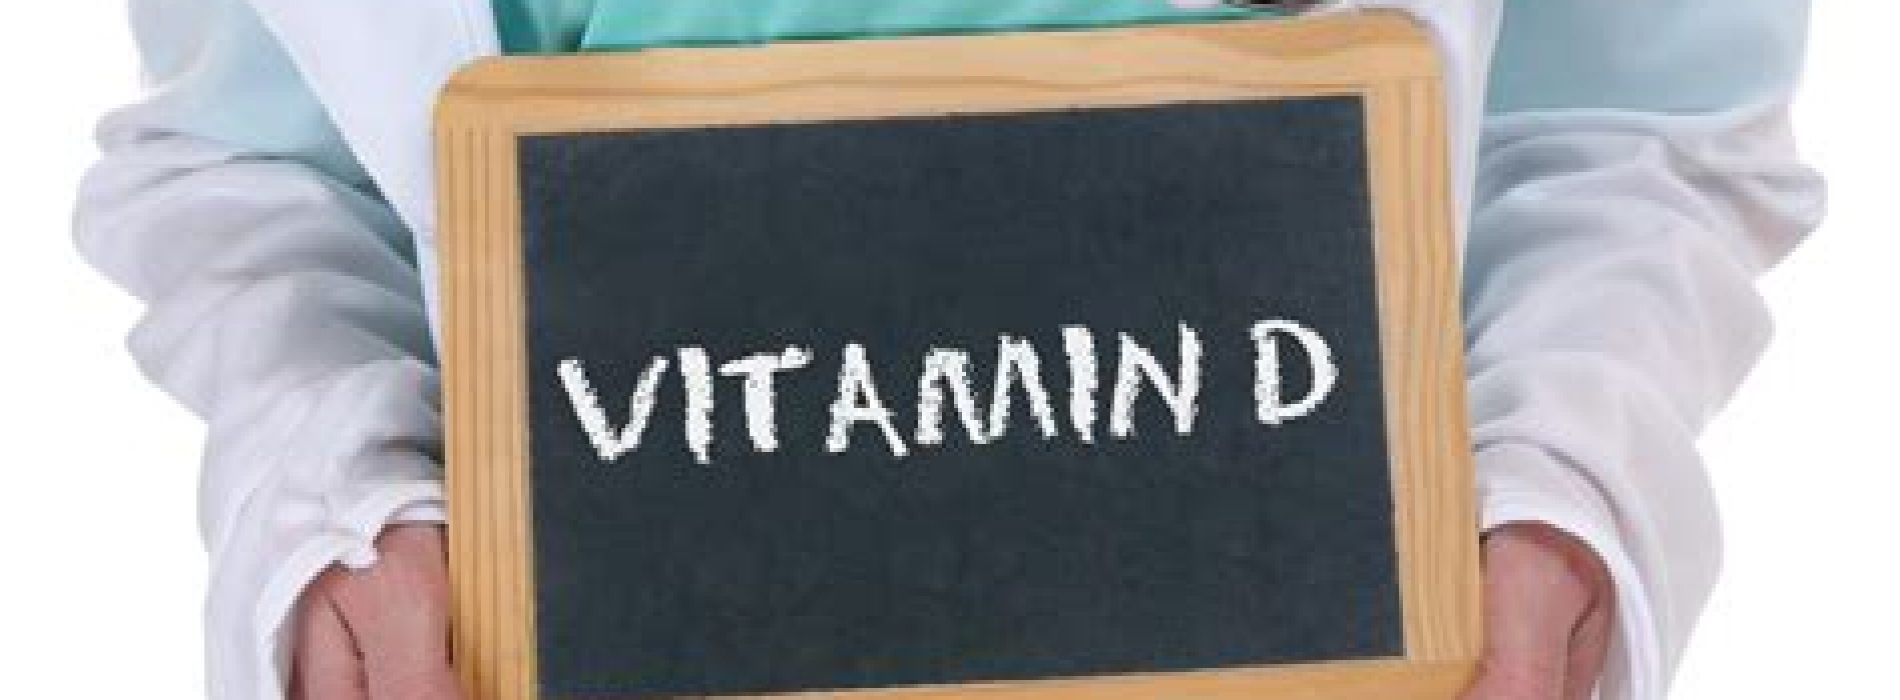 Adequate vitamine D-spiegels verminderen complicaties en overlijden door COVID-19